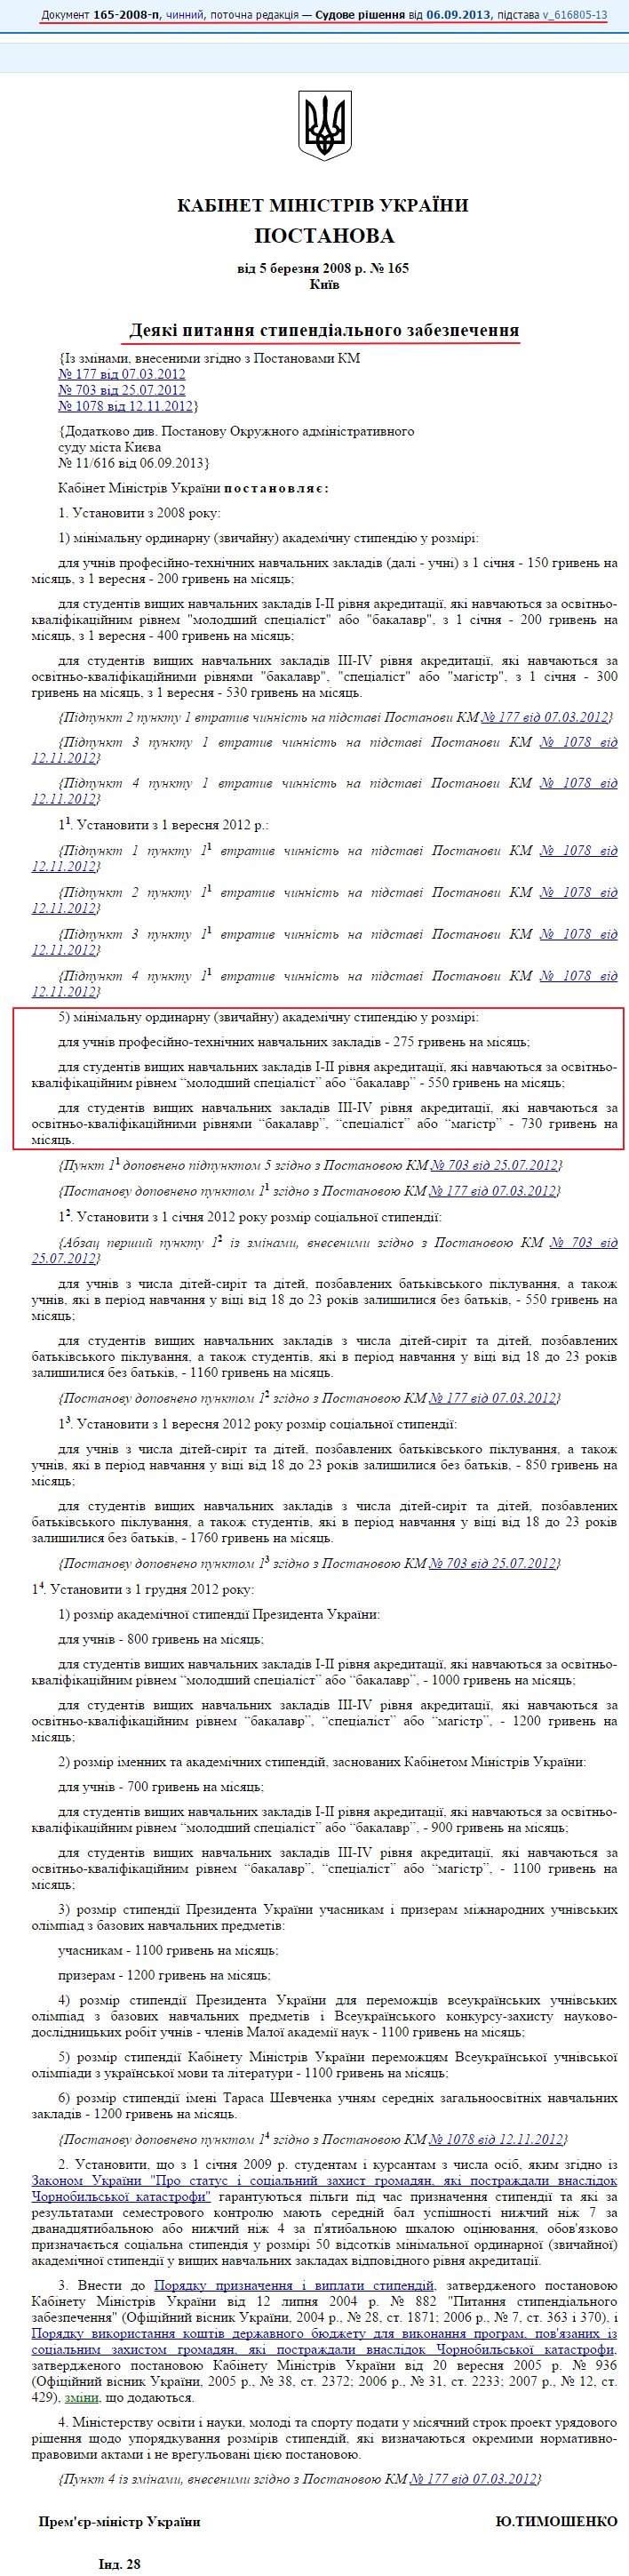 http://zakon2.rada.gov.ua/laws/show/165-2008-%D0%BF